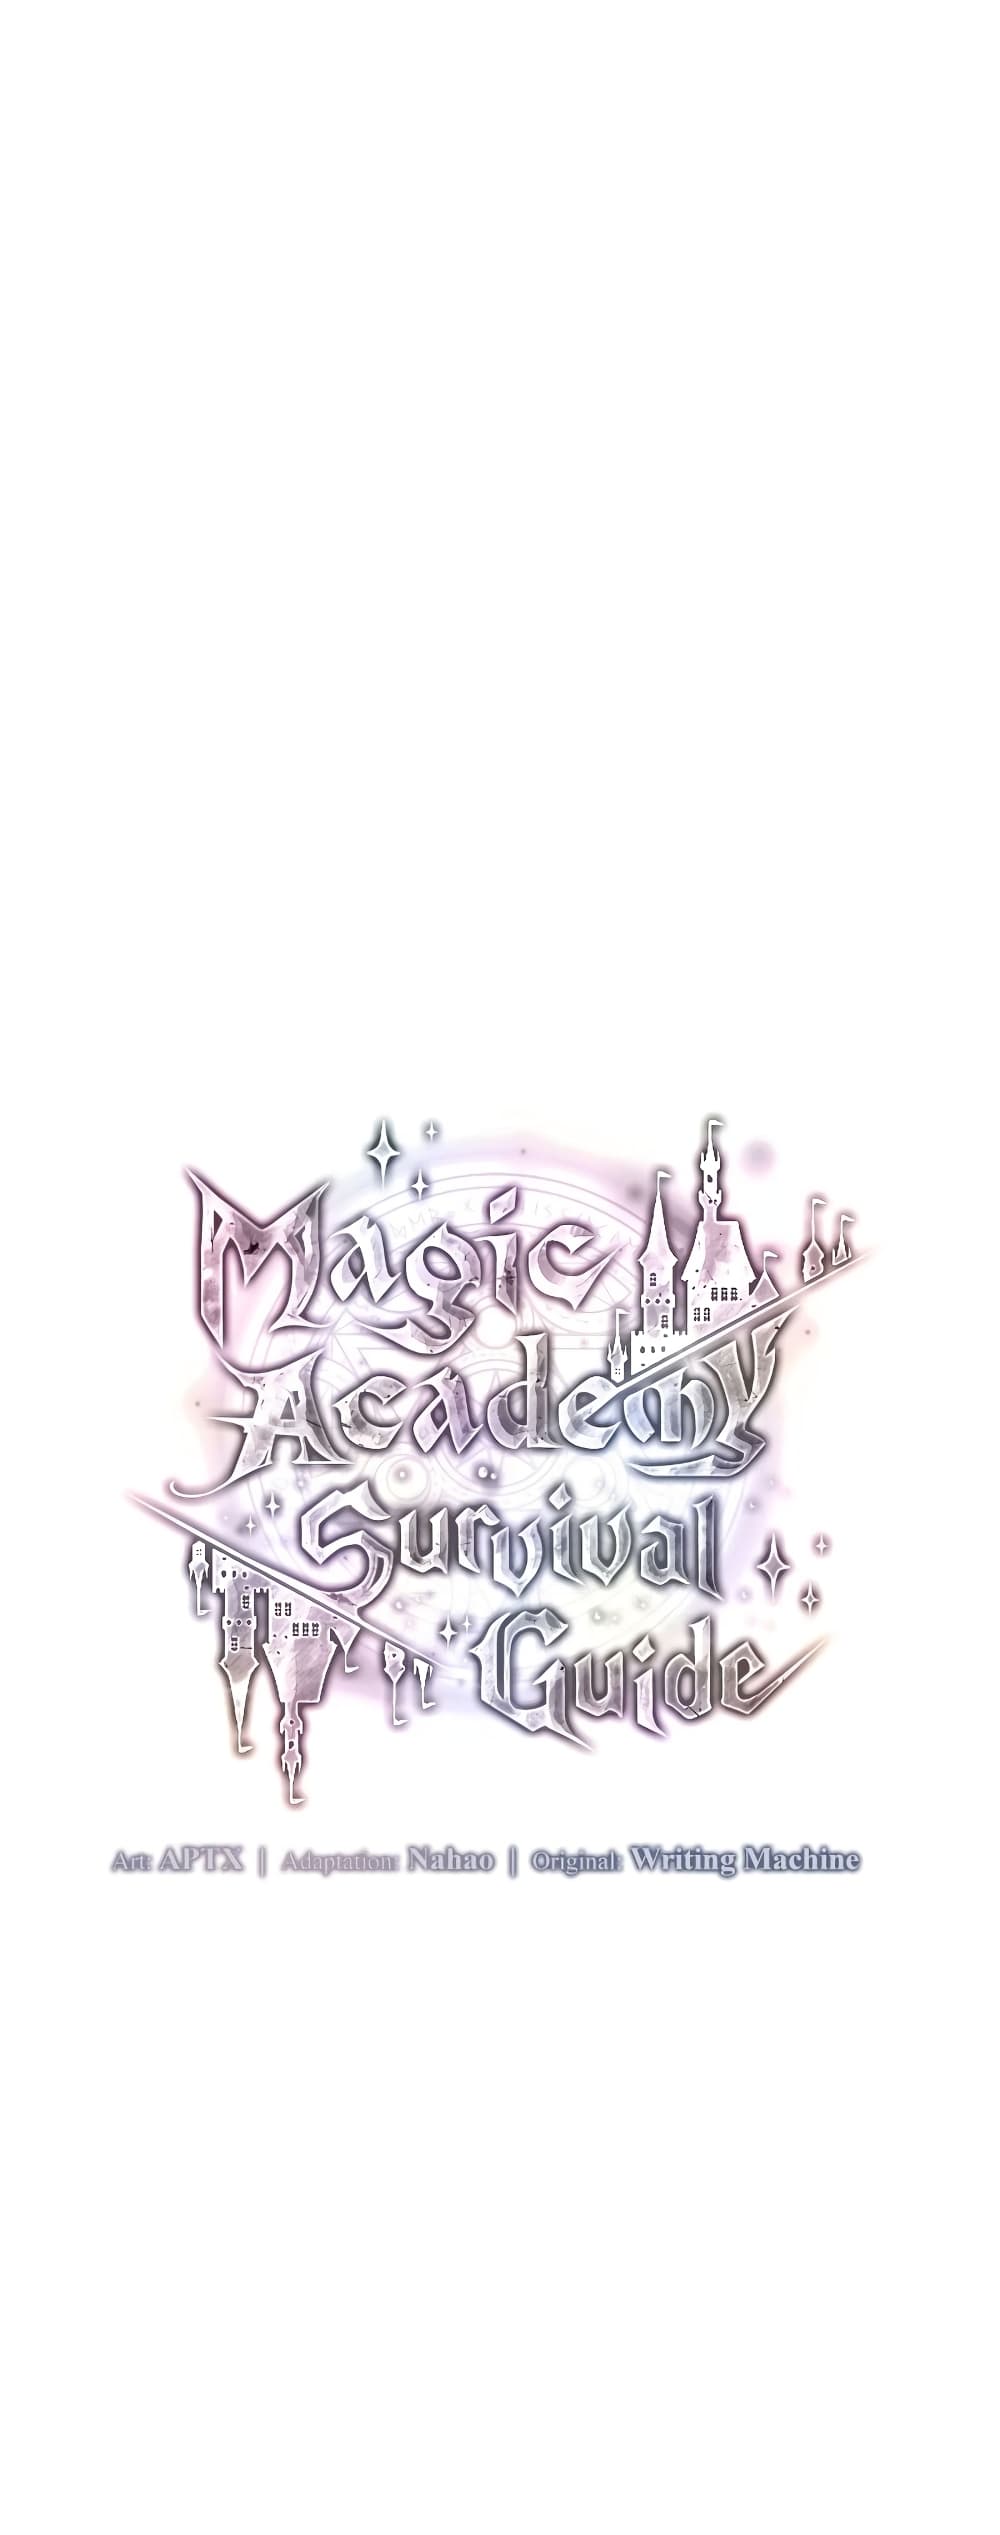 อ่านการ์ตูน Magic Academy Survival Guide 13 ภาพที่ 8